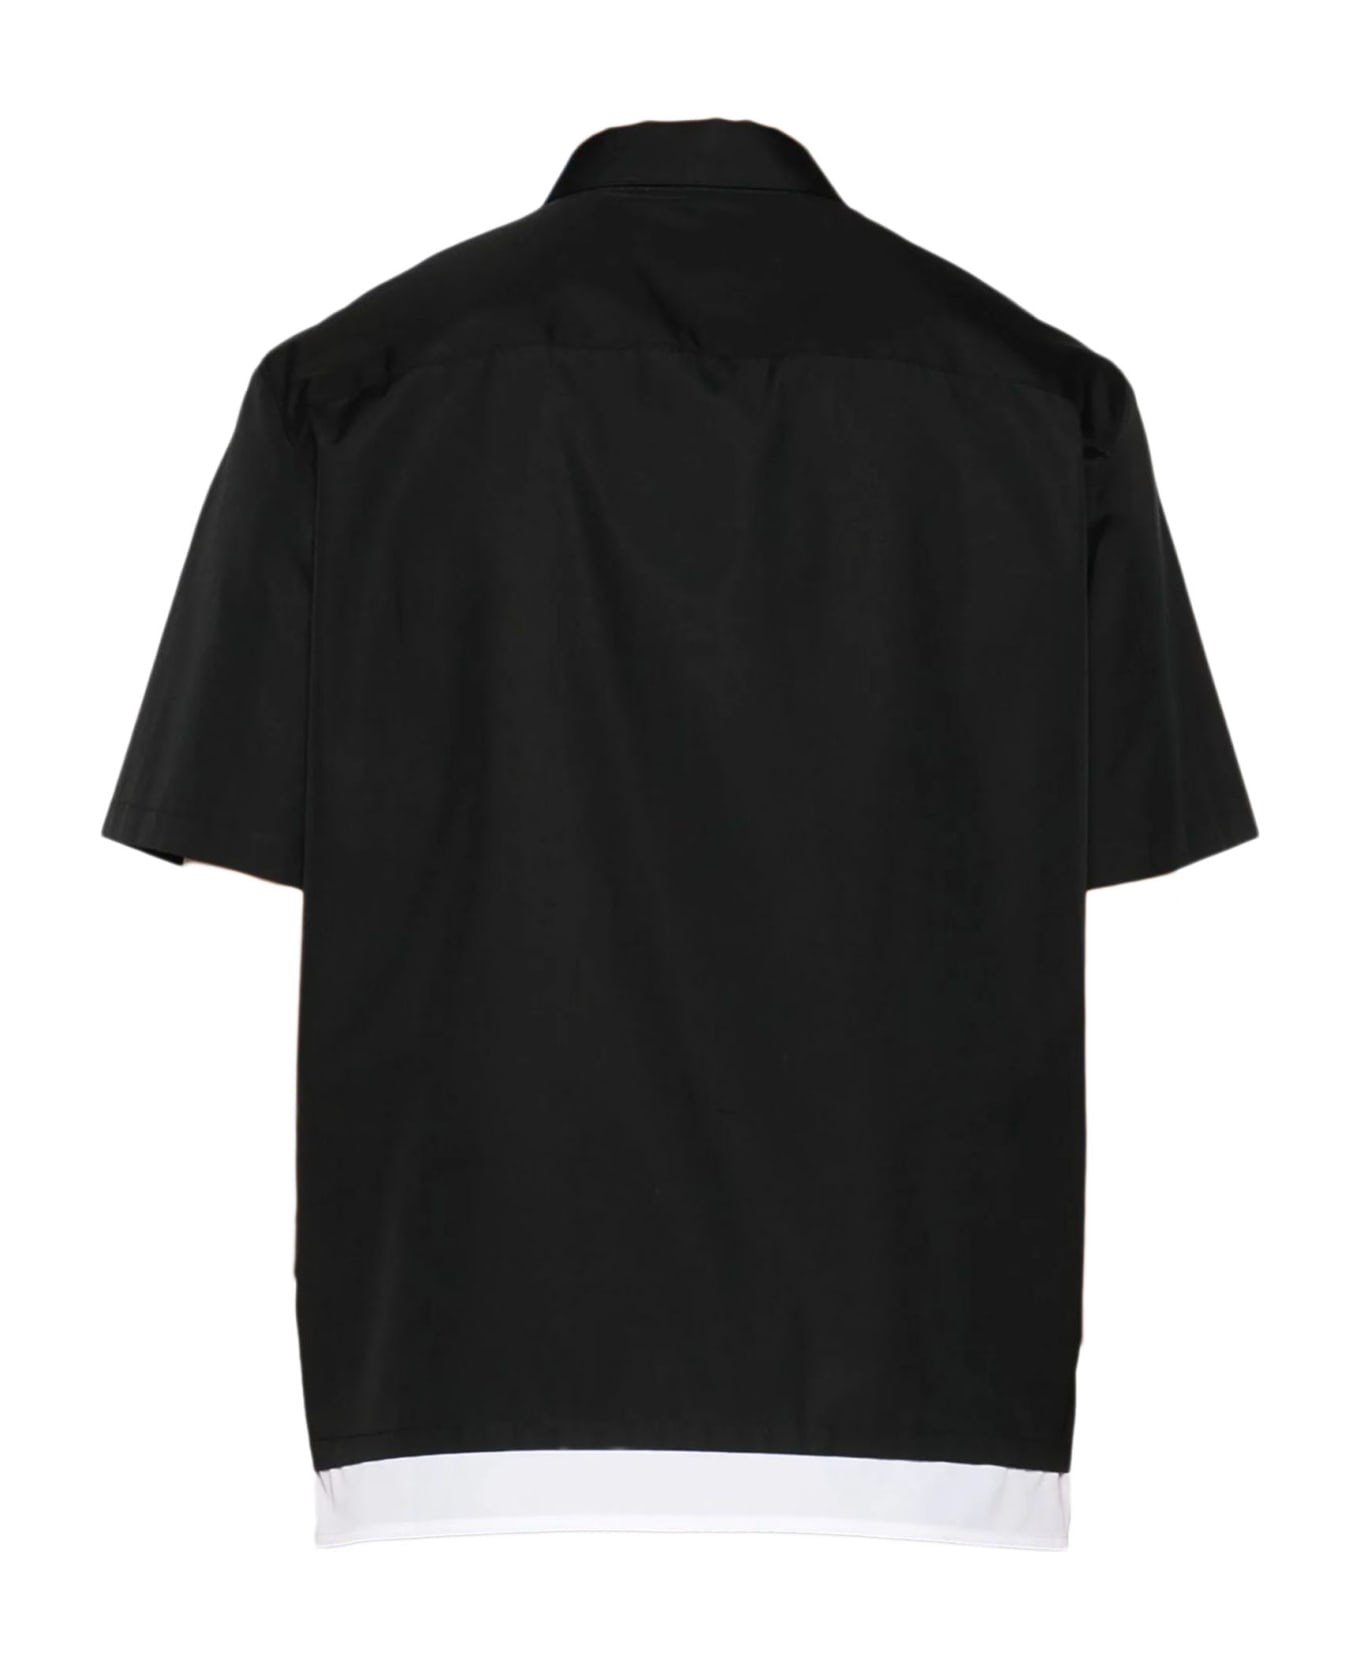 Neil Barrett Shirts Black - Black